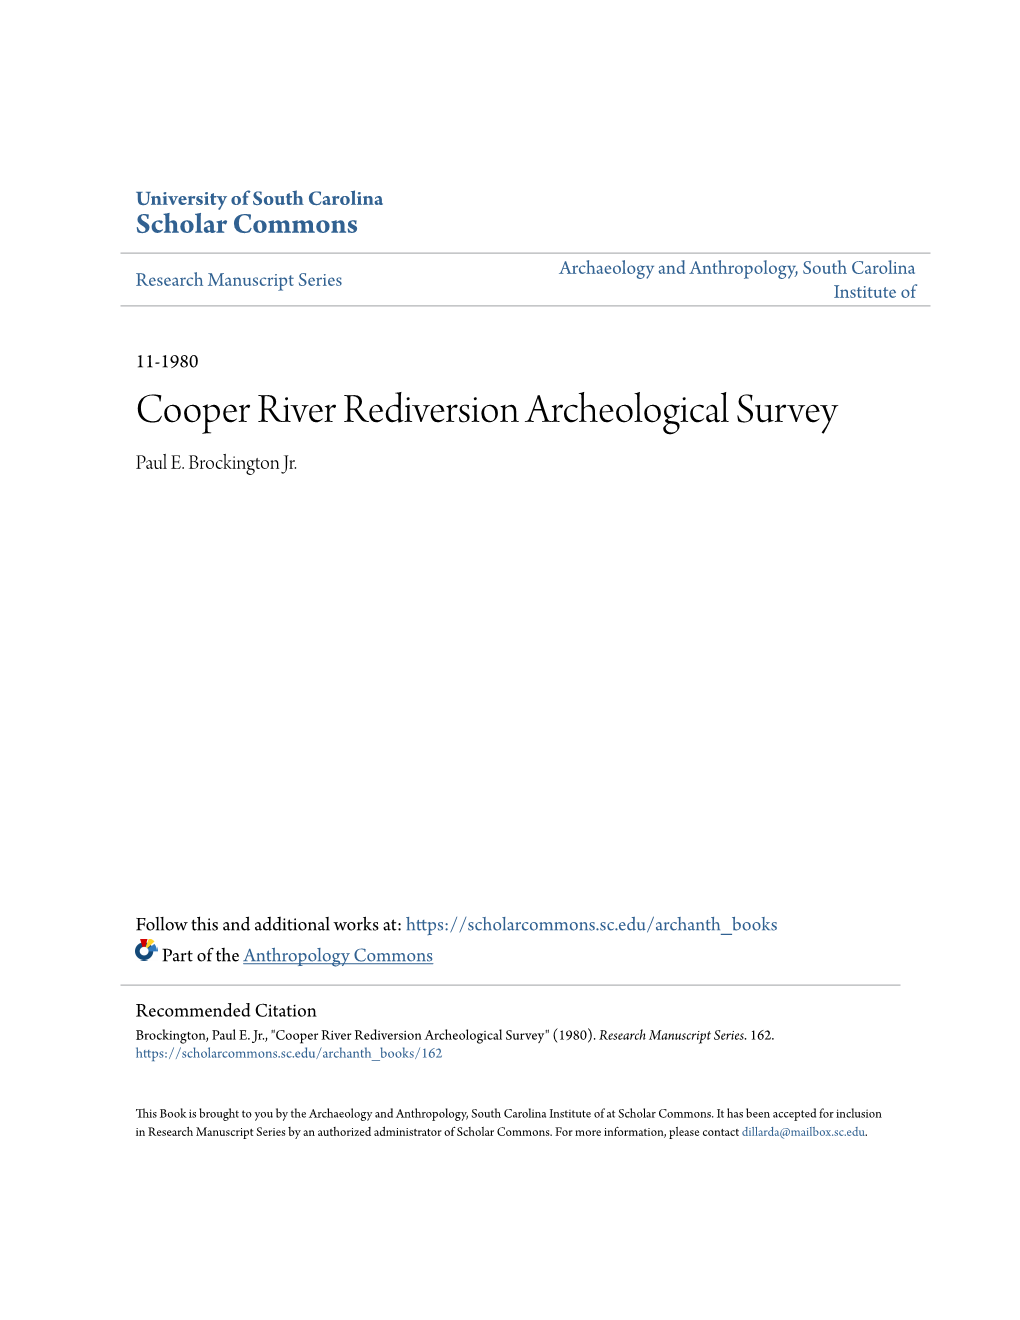 Cooper River Rediversion Archeological Survey Paul E